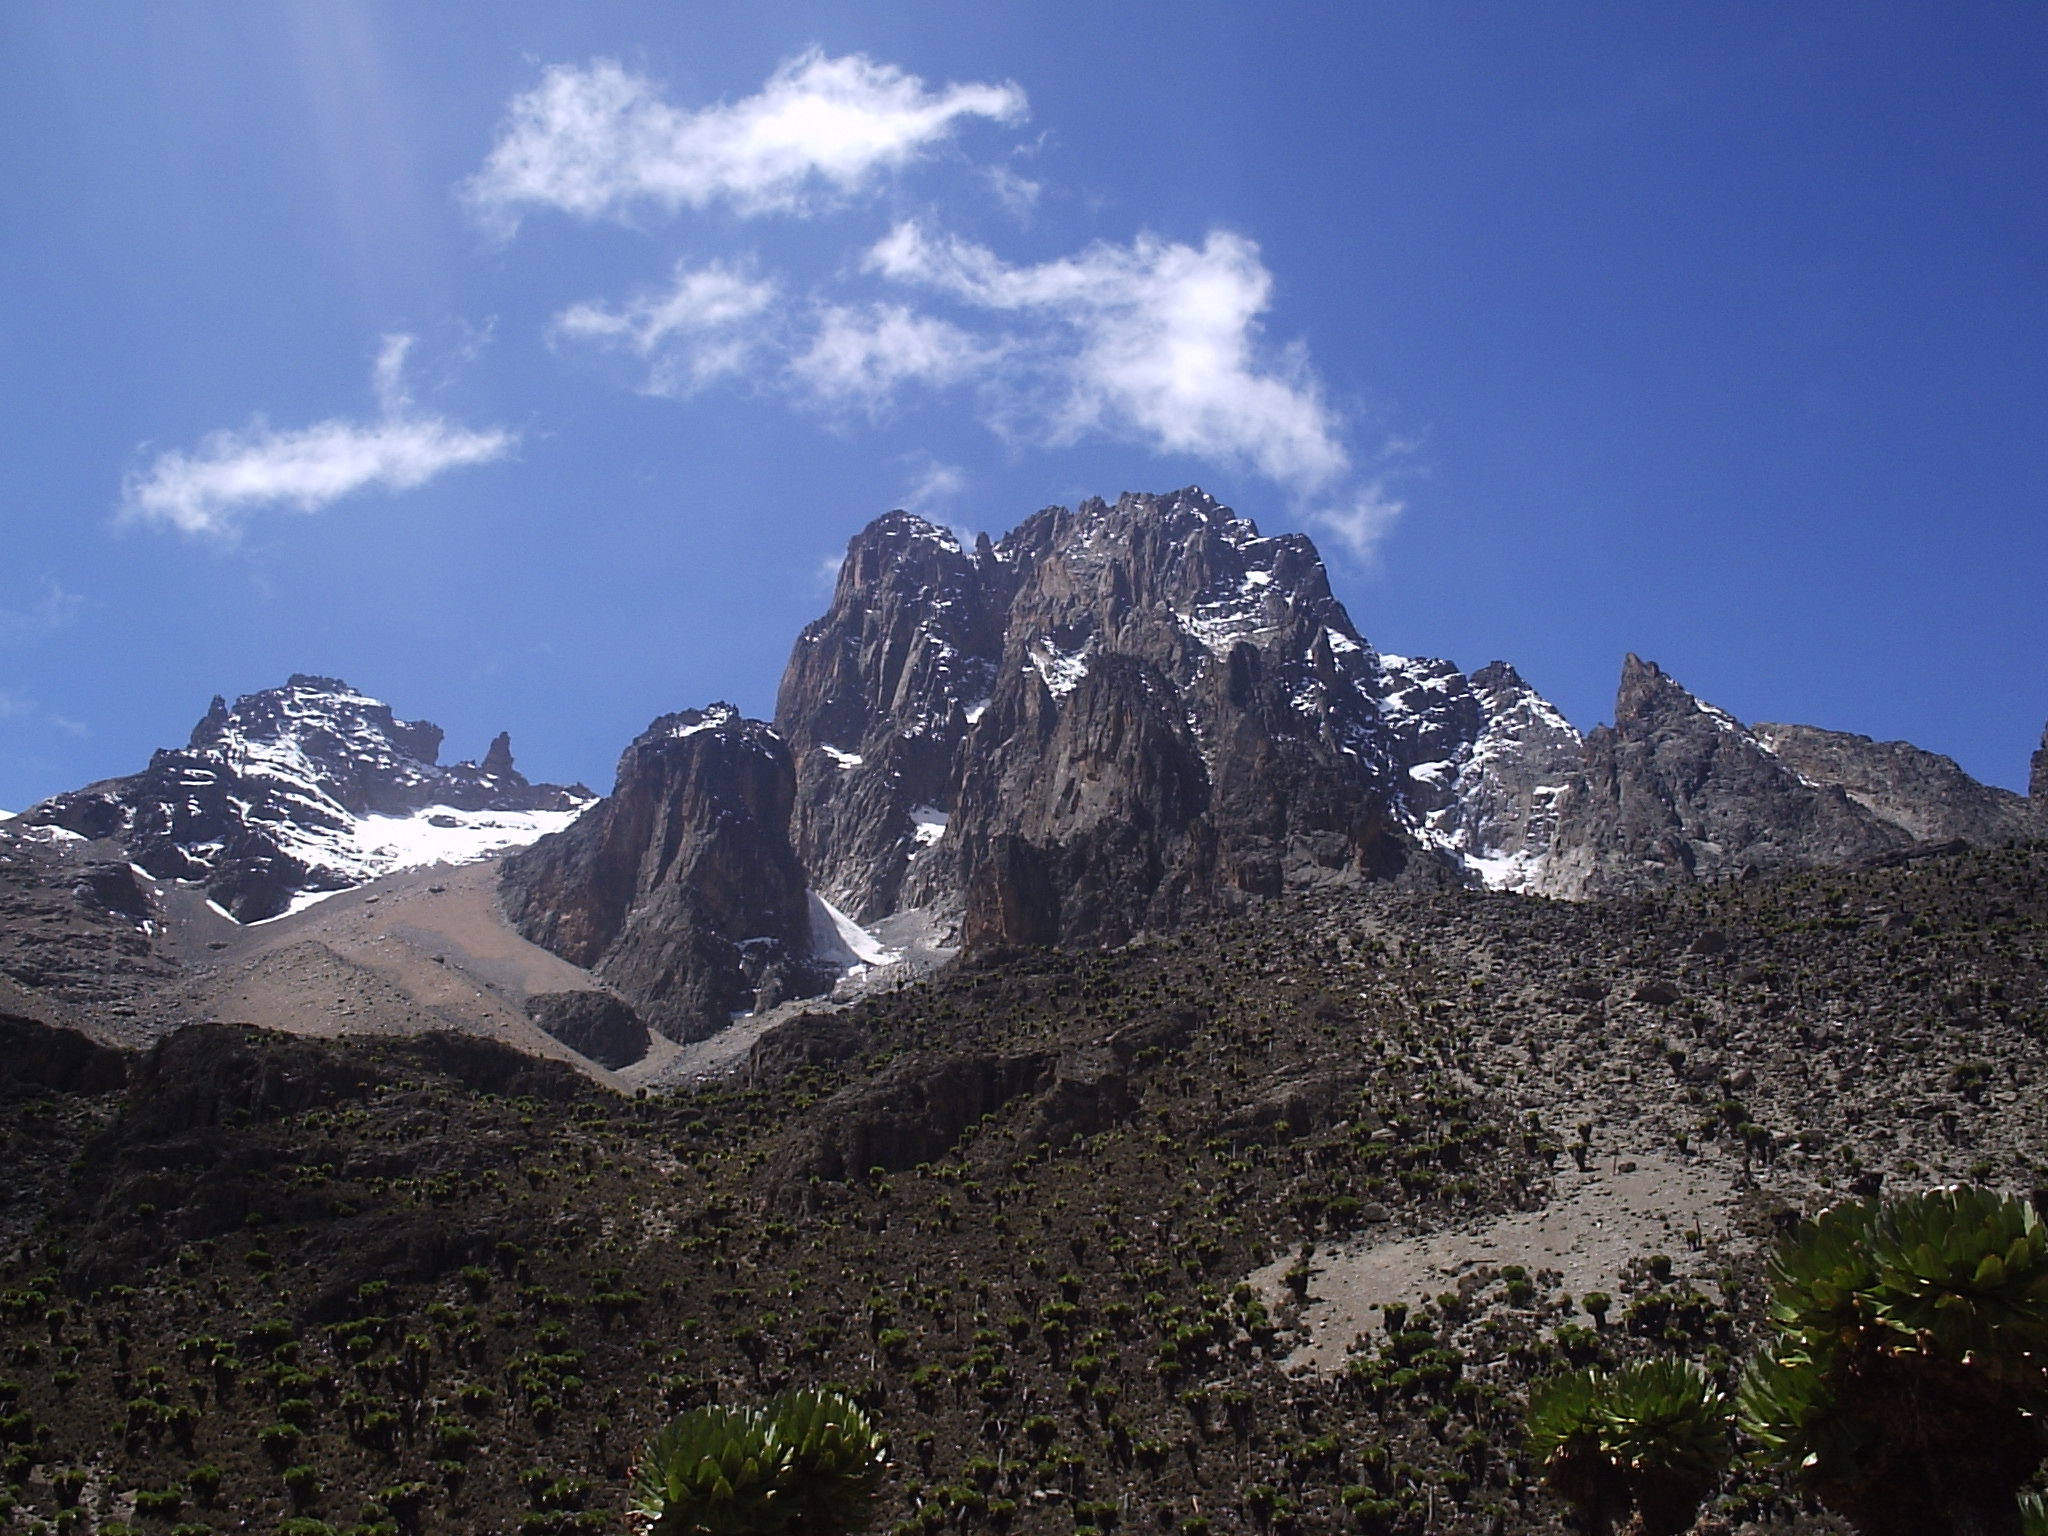   Mount Kenya National Park 